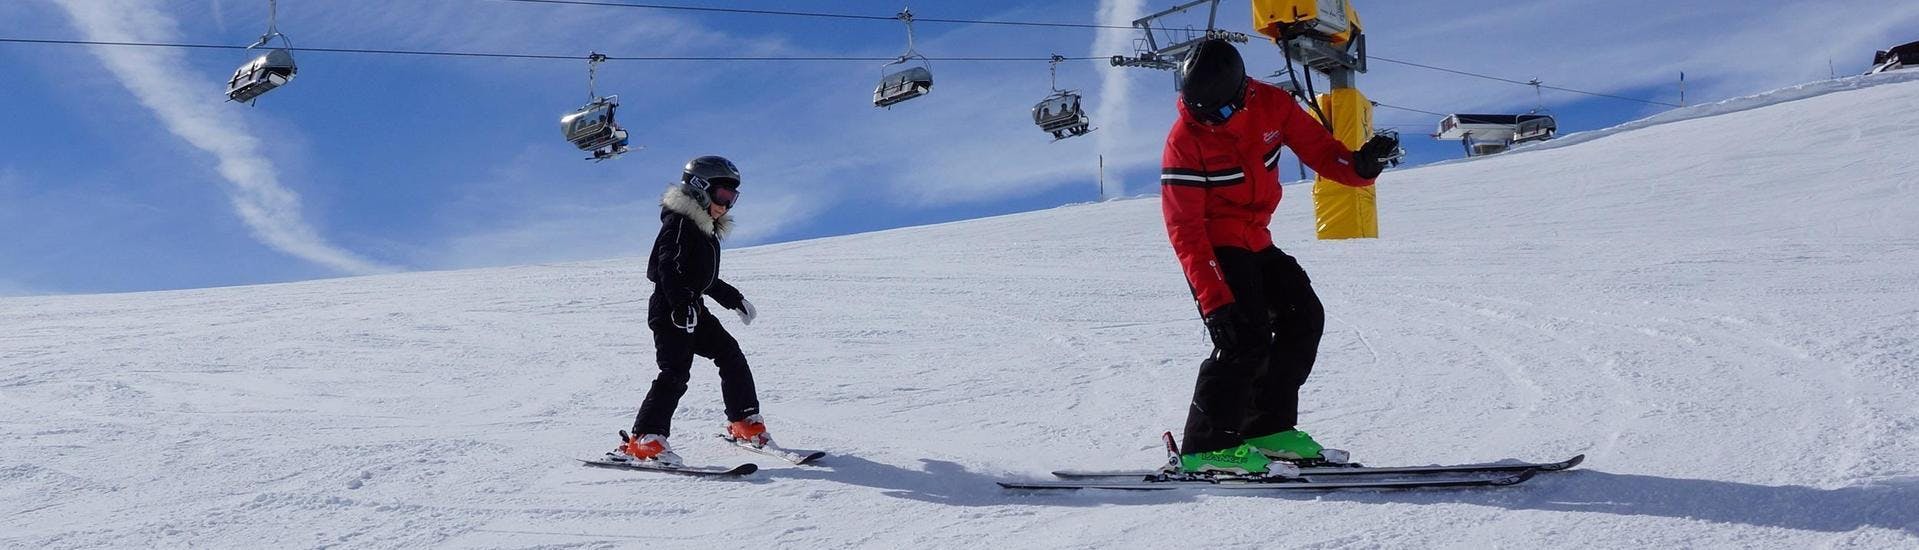 private-ski-lessons-for-kids-all-levels-ski-und-snowboardschule-vacancia-hero